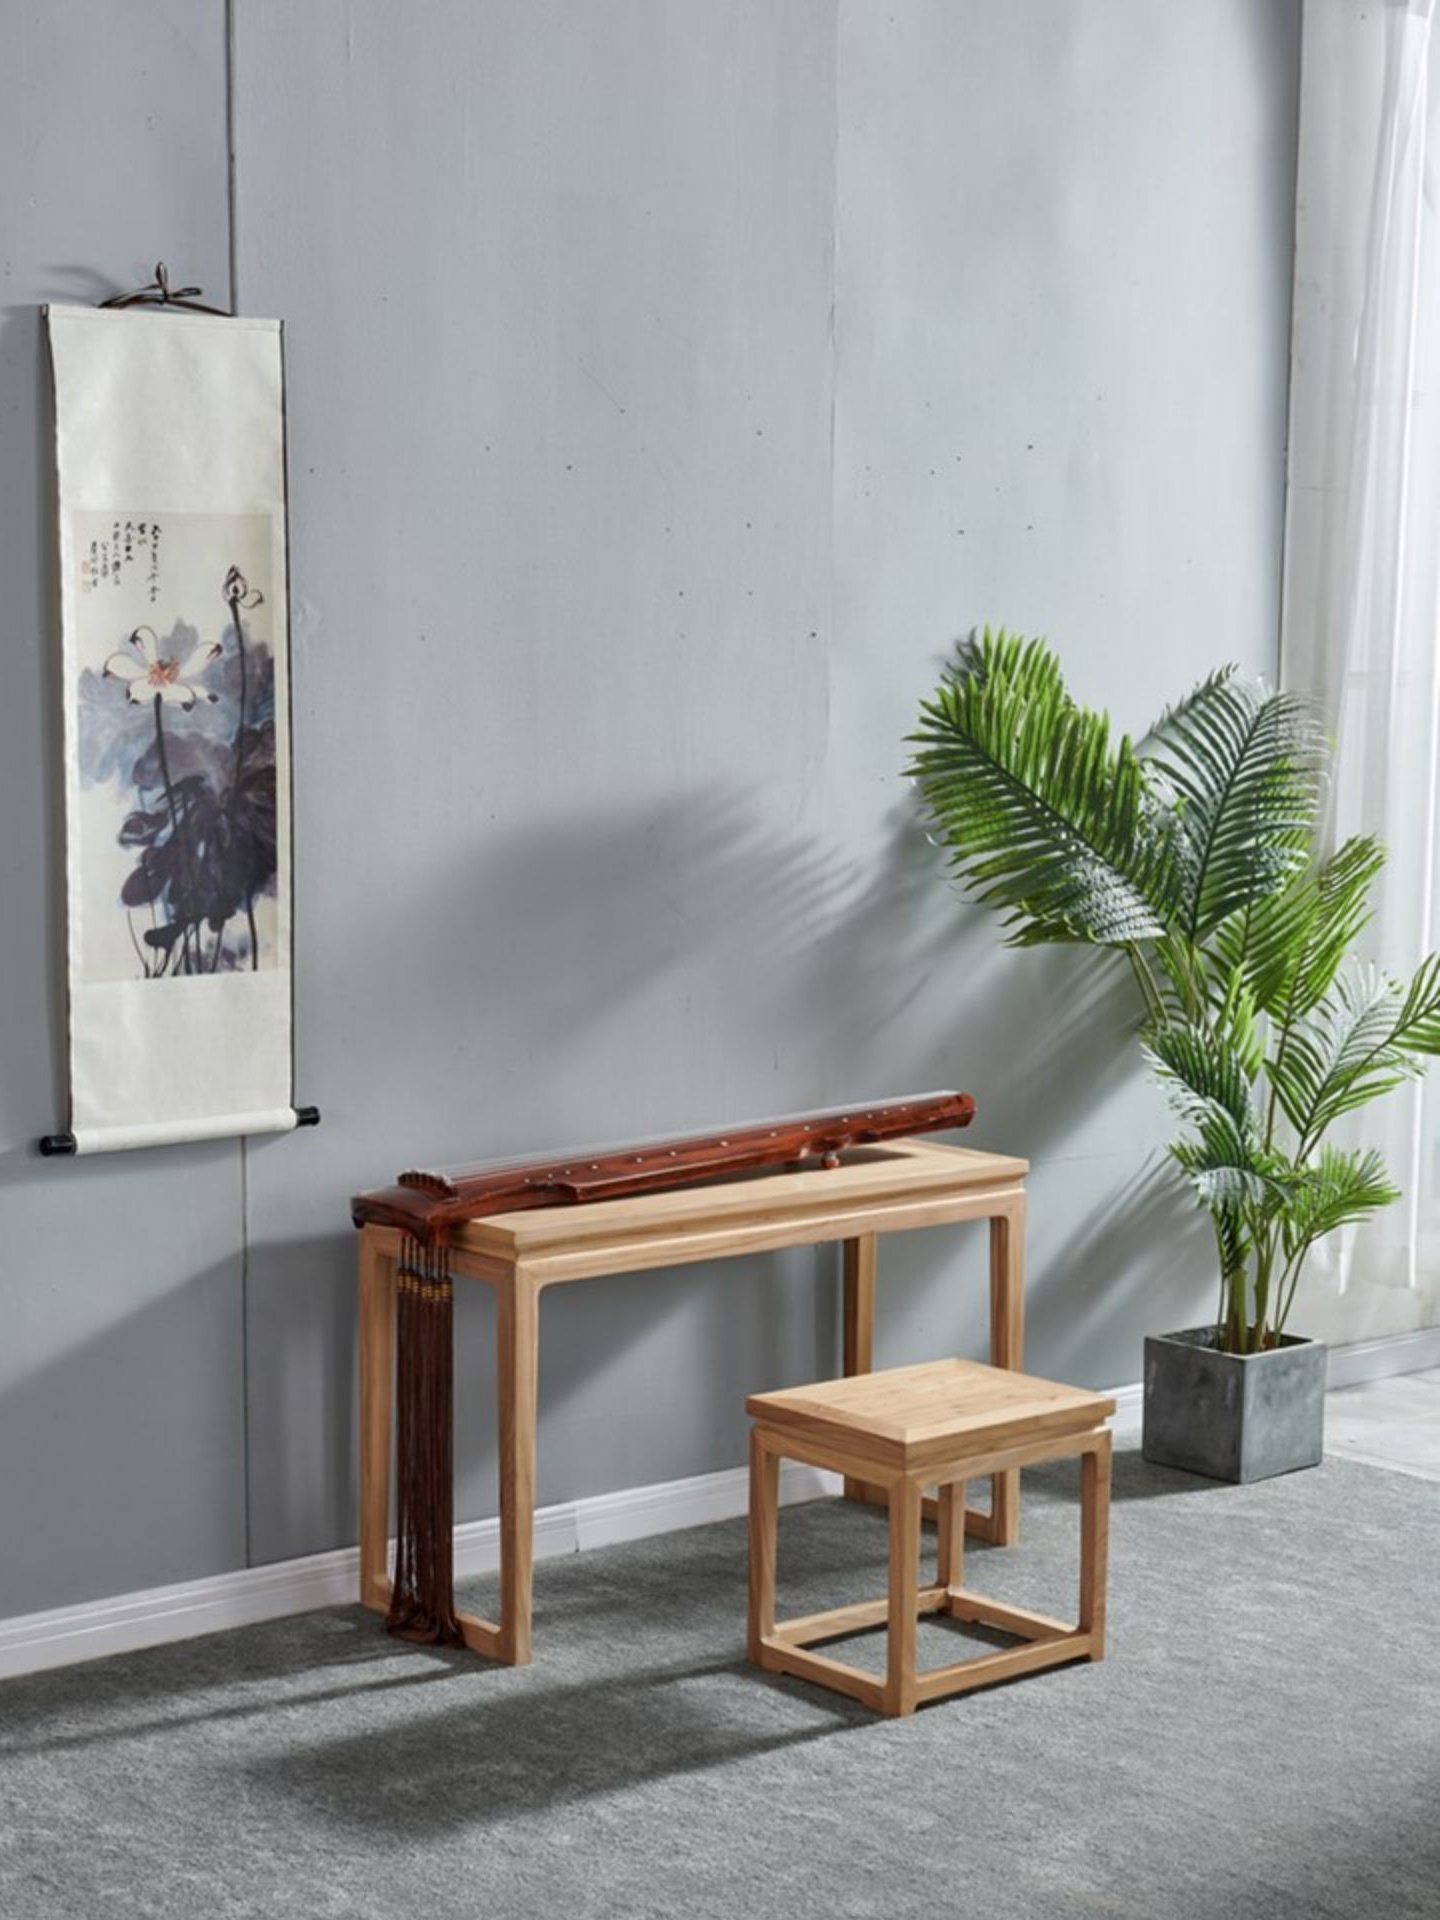 老榆木打造古琴桌椅套組簡約新中式風格禪意原木傢俱